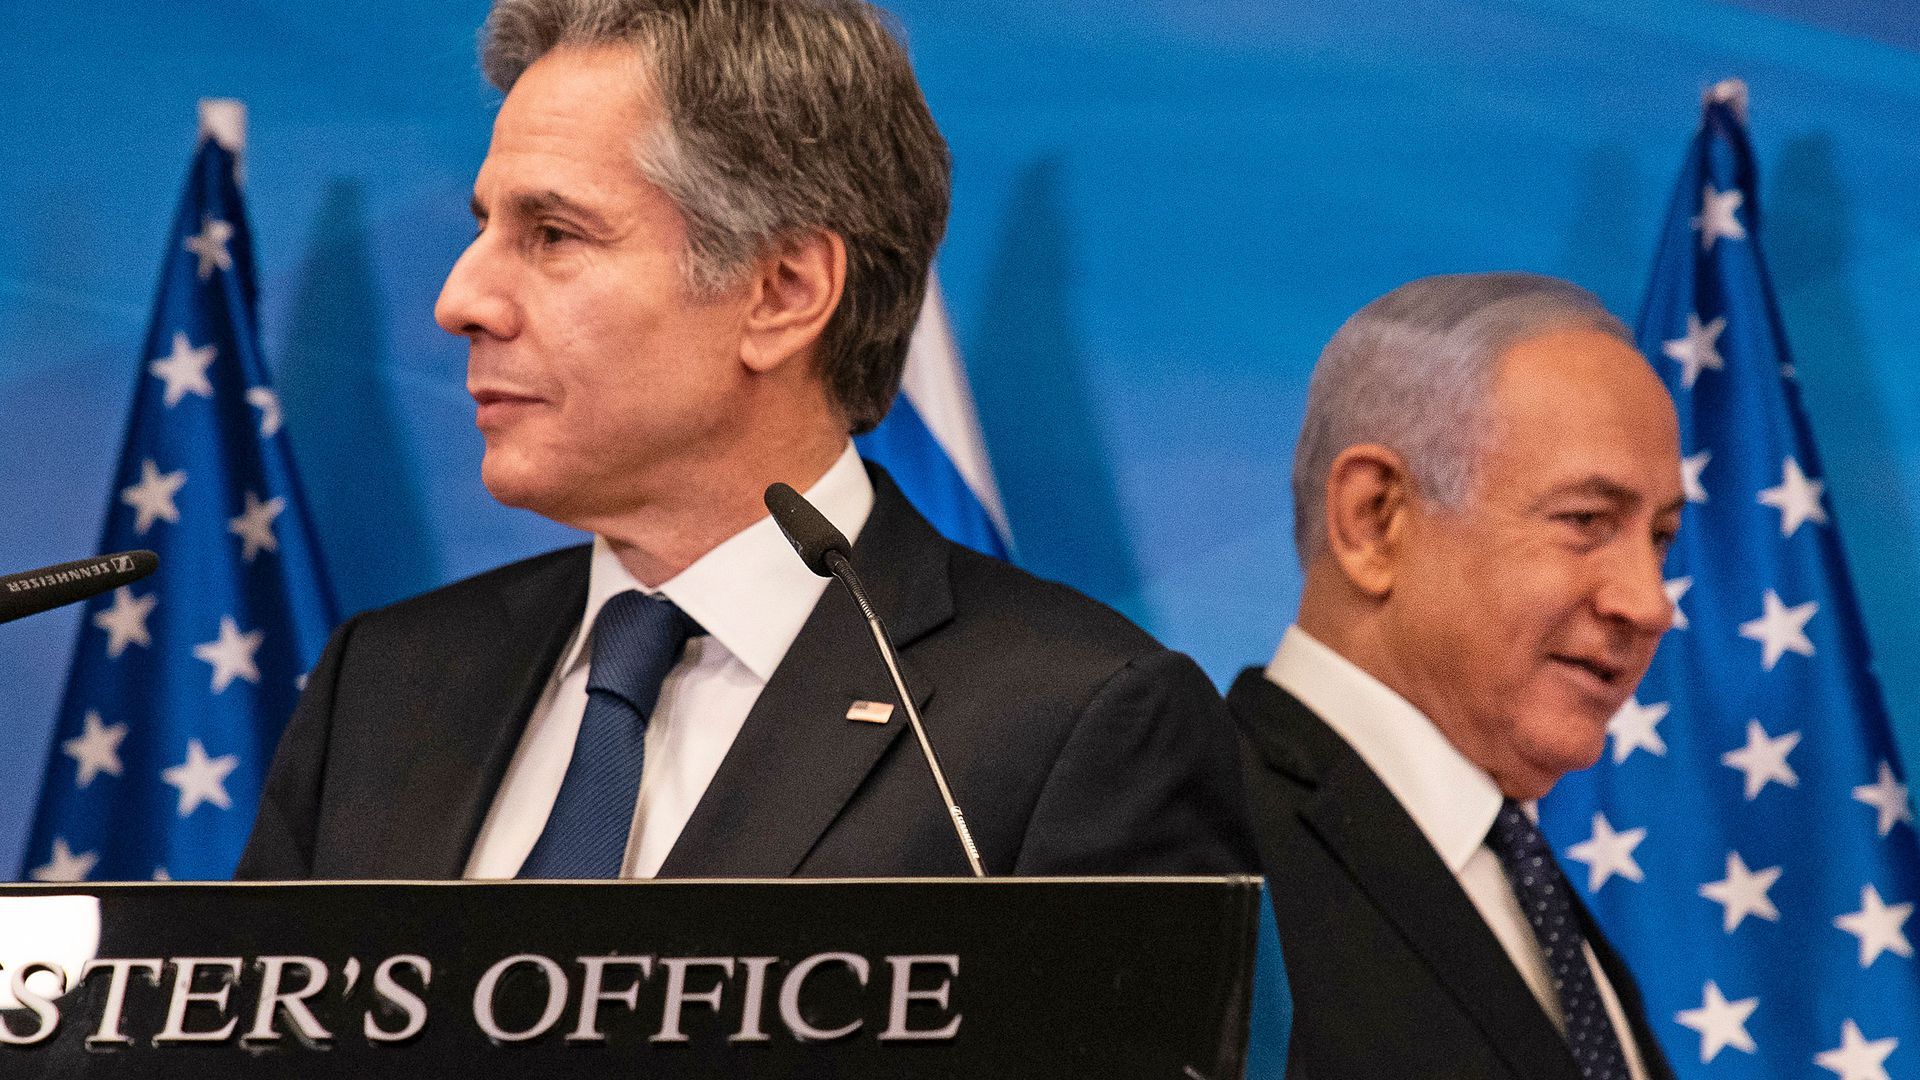 Picture of Benjamin Netanyahu standing behind Antony Blinken